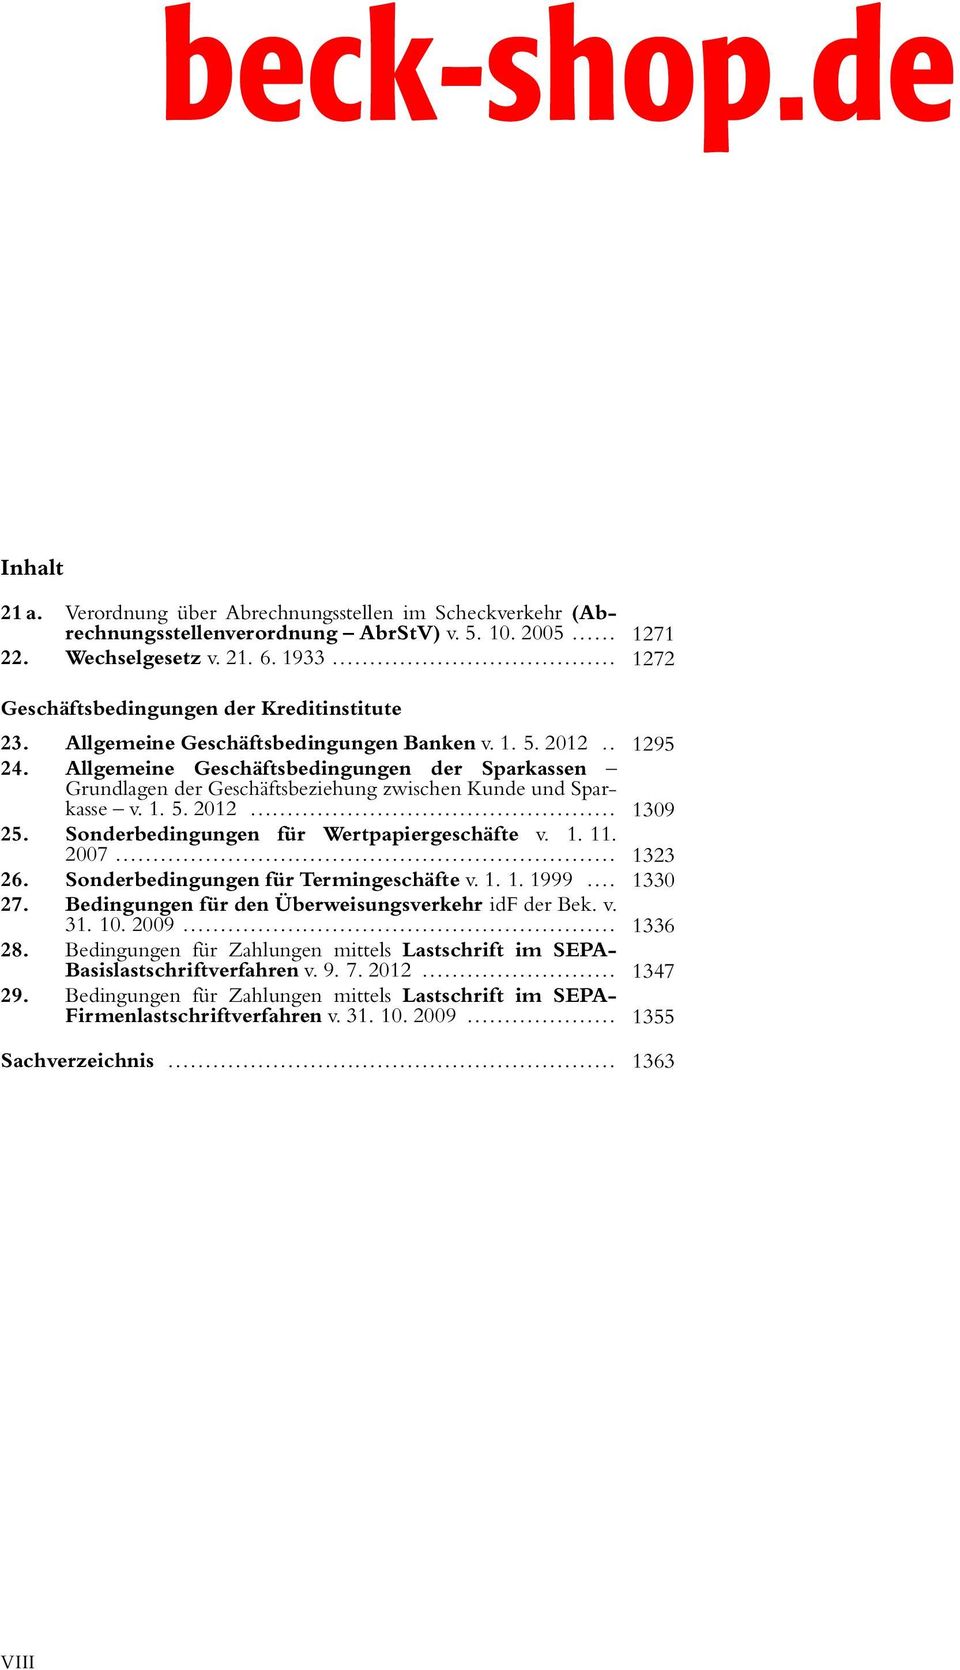 Allgemeine Geschäftsbedingungen der Sparkassen Grundlagen der Geschäftsbeziehung zwischen Kunde und Sparkasse v. 1. 5. 2012... 1309 25. Sonderbedingungen für Wertpapiergeschäfte v. 1. 11. 2007.